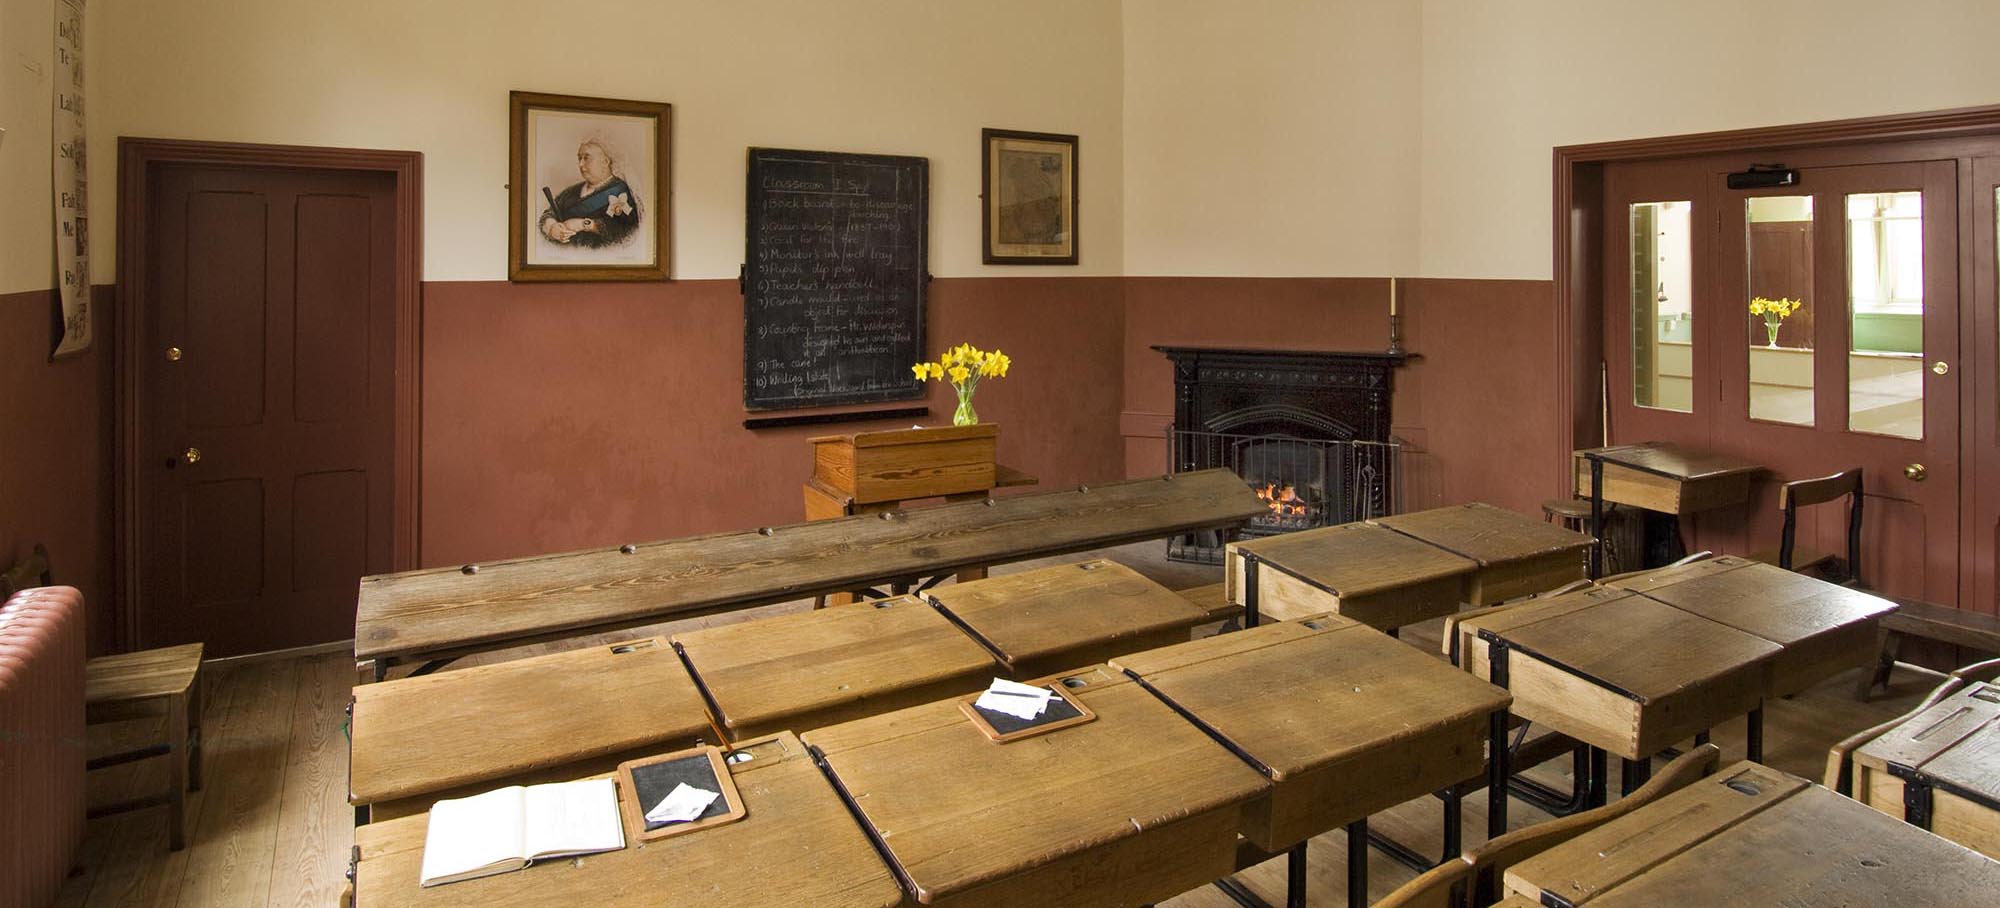 Restored Victorian schoolroom